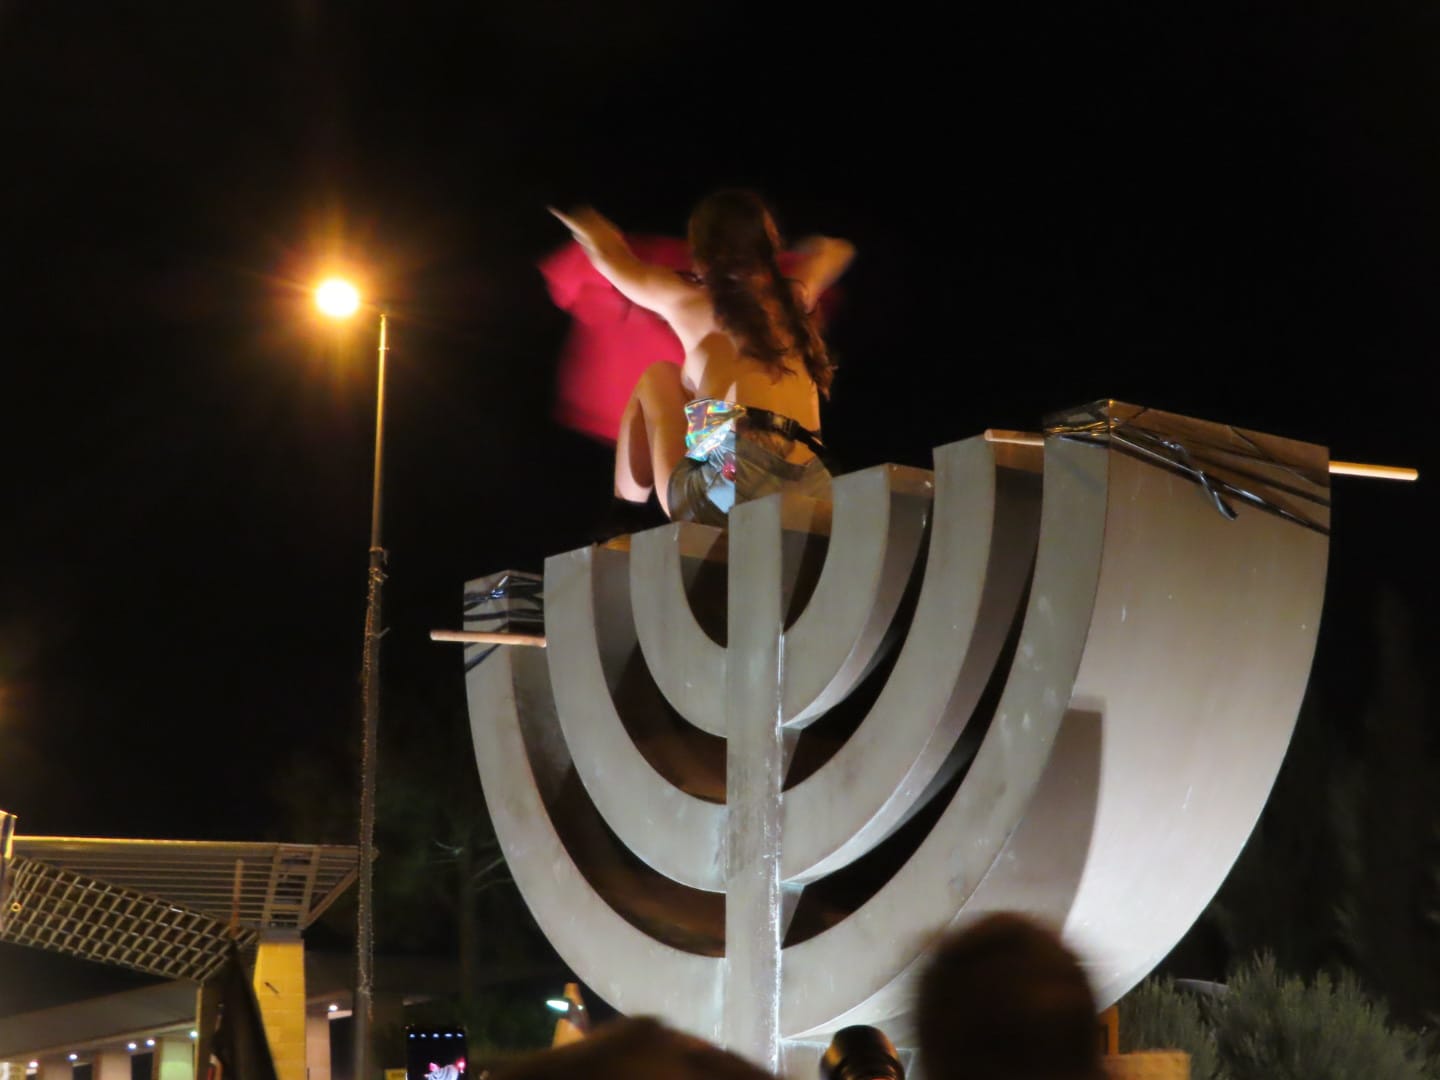 מפגינה בעירום חלקי על פסל המנורה מול הכנסת בהפגנת מחאה כנגד המצב הכלכלי וחוק הקורונה, 21 ביולי 2020 (צילום: אם תרצו)